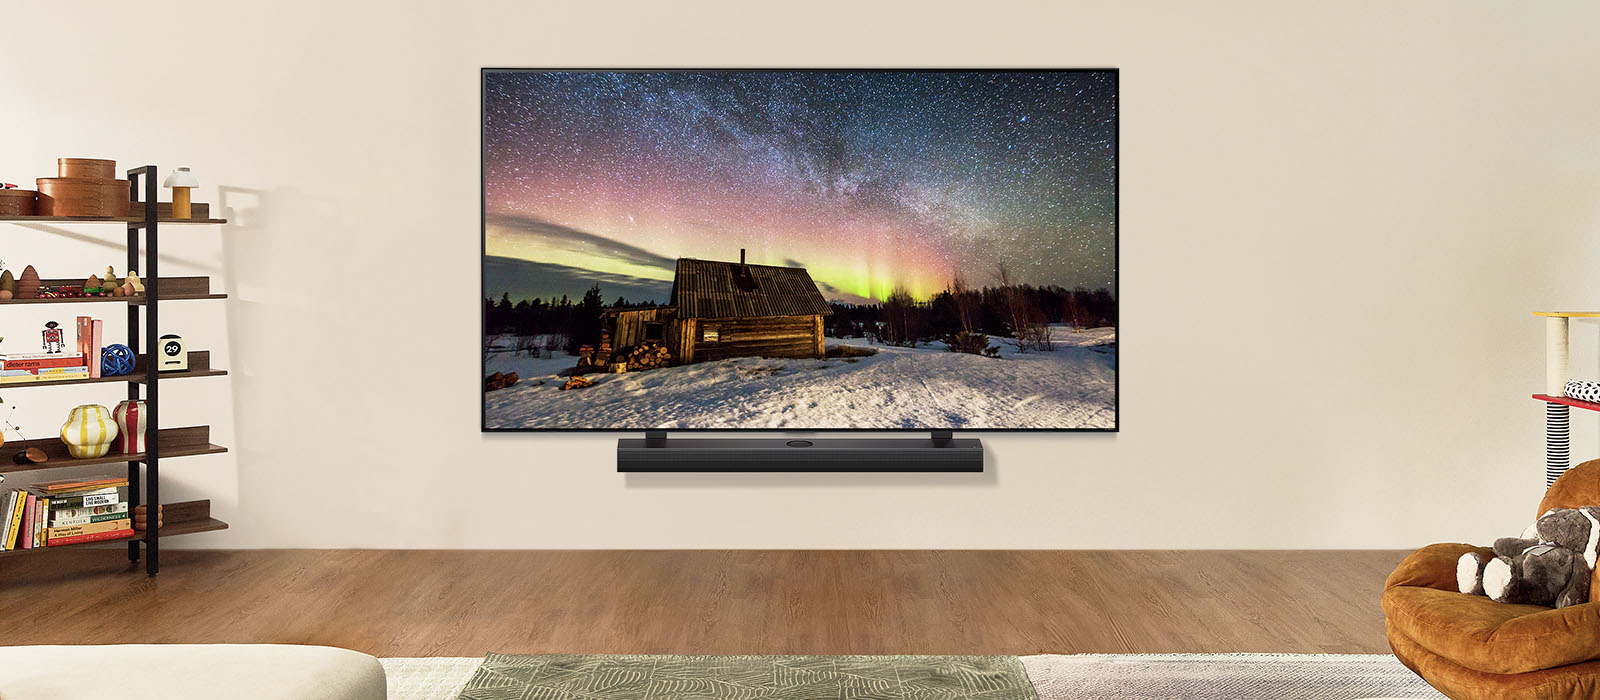 تلفزيون LG TV ومكبر صوت LG Soundbar في غرفة معيشة عصرية في أثناء النهار. تُعرَض صورة للشفق القطبي على الشاشة بمستويات سطوع مثالية.